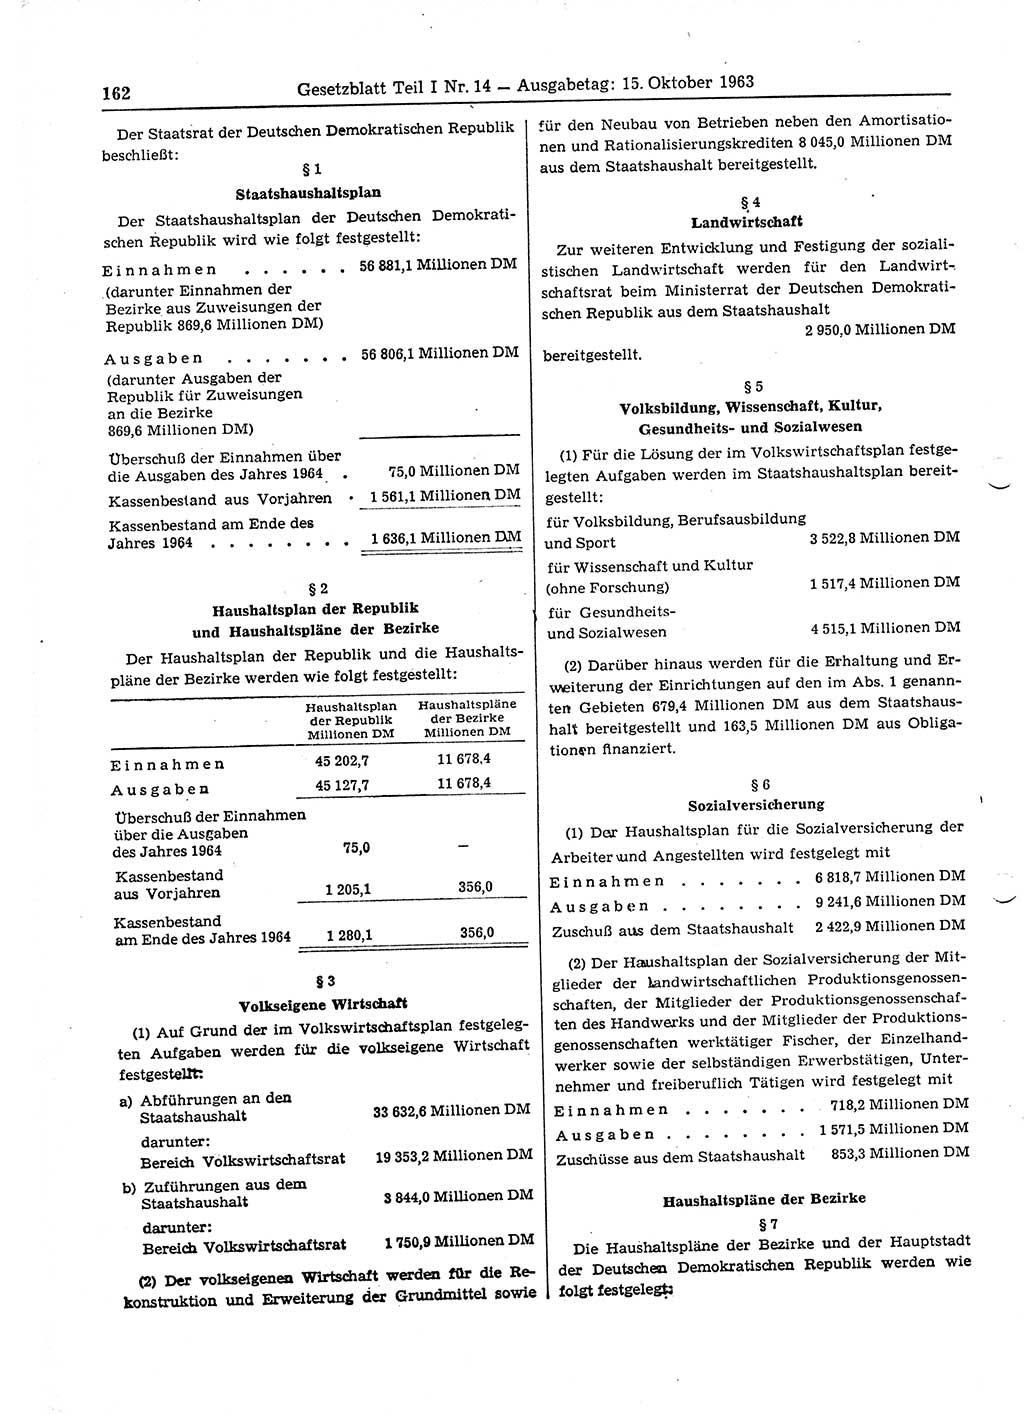 Gesetzblatt (GBl.) der Deutschen Demokratischen Republik (DDR) Teil Ⅰ 1963, Seite 162 (GBl. DDR Ⅰ 1963, S. 162)